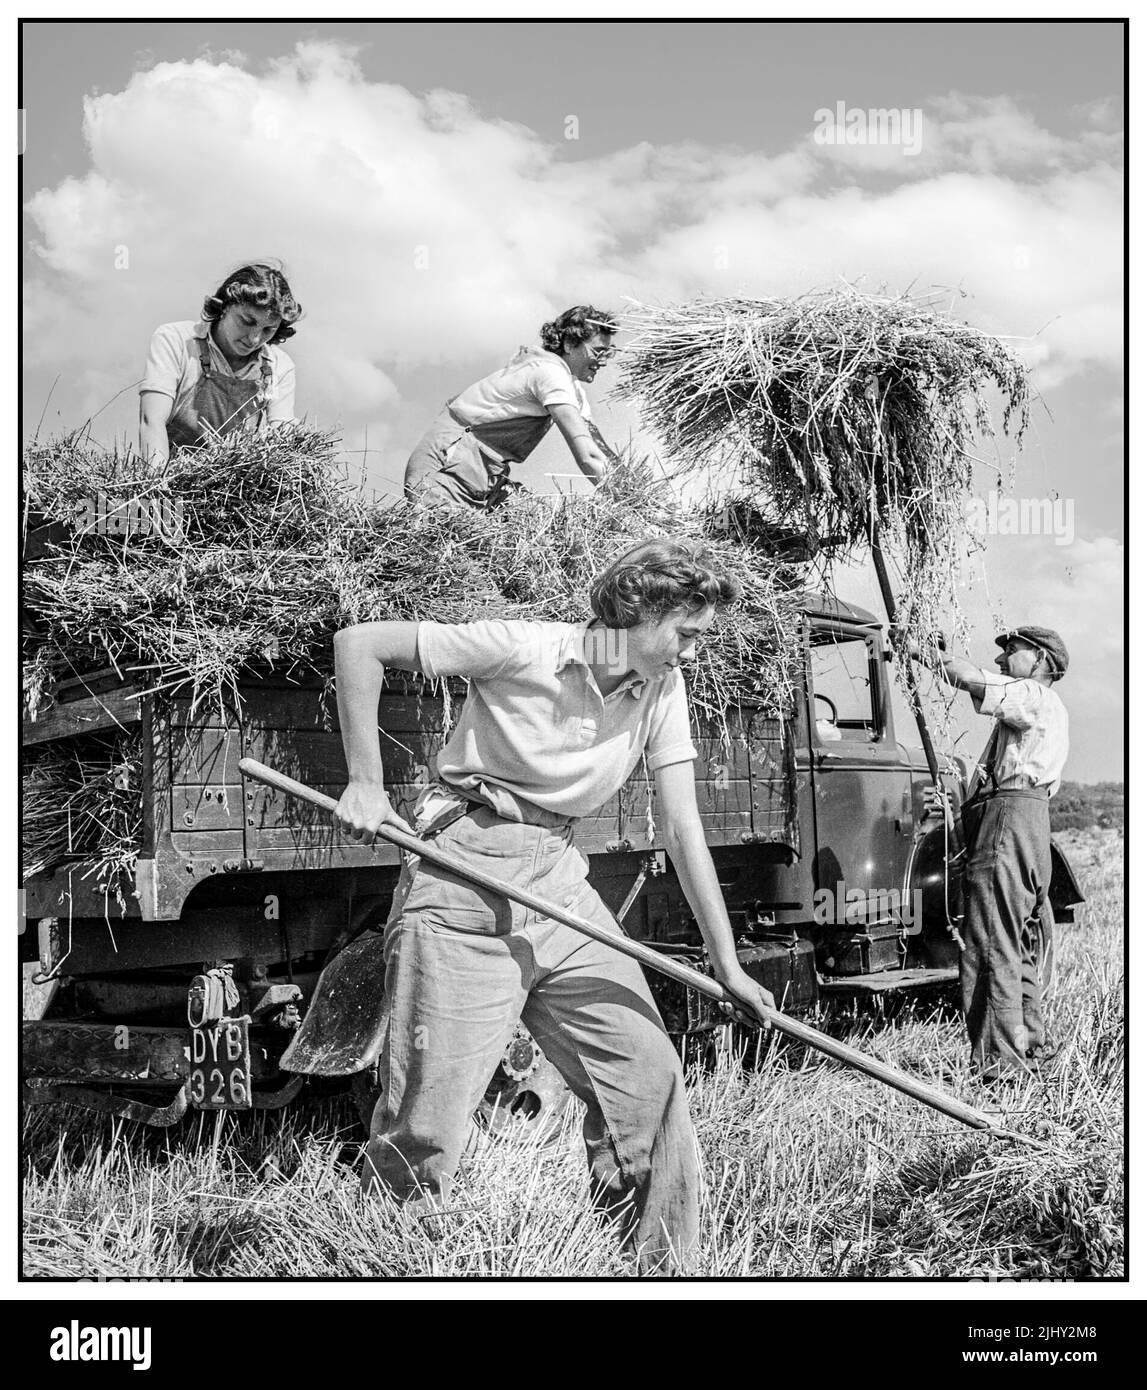 WW2 FRAUEN LANDARMEE Großbritannien Nahrungsmittelproduktion Ernte am Mount Barton, Devon, England, 1940s Land Girls helfen einem Landwirt, geernteten Hafer in den Sonnenschein von Hollow Moor, Devon, in einen Lastwagen zu laden.1942 Frauen Landarmee. Die WLA arbeitete während des Zweiten Weltkriegs an der Versorgung mit Lebensmitteln Stockfoto